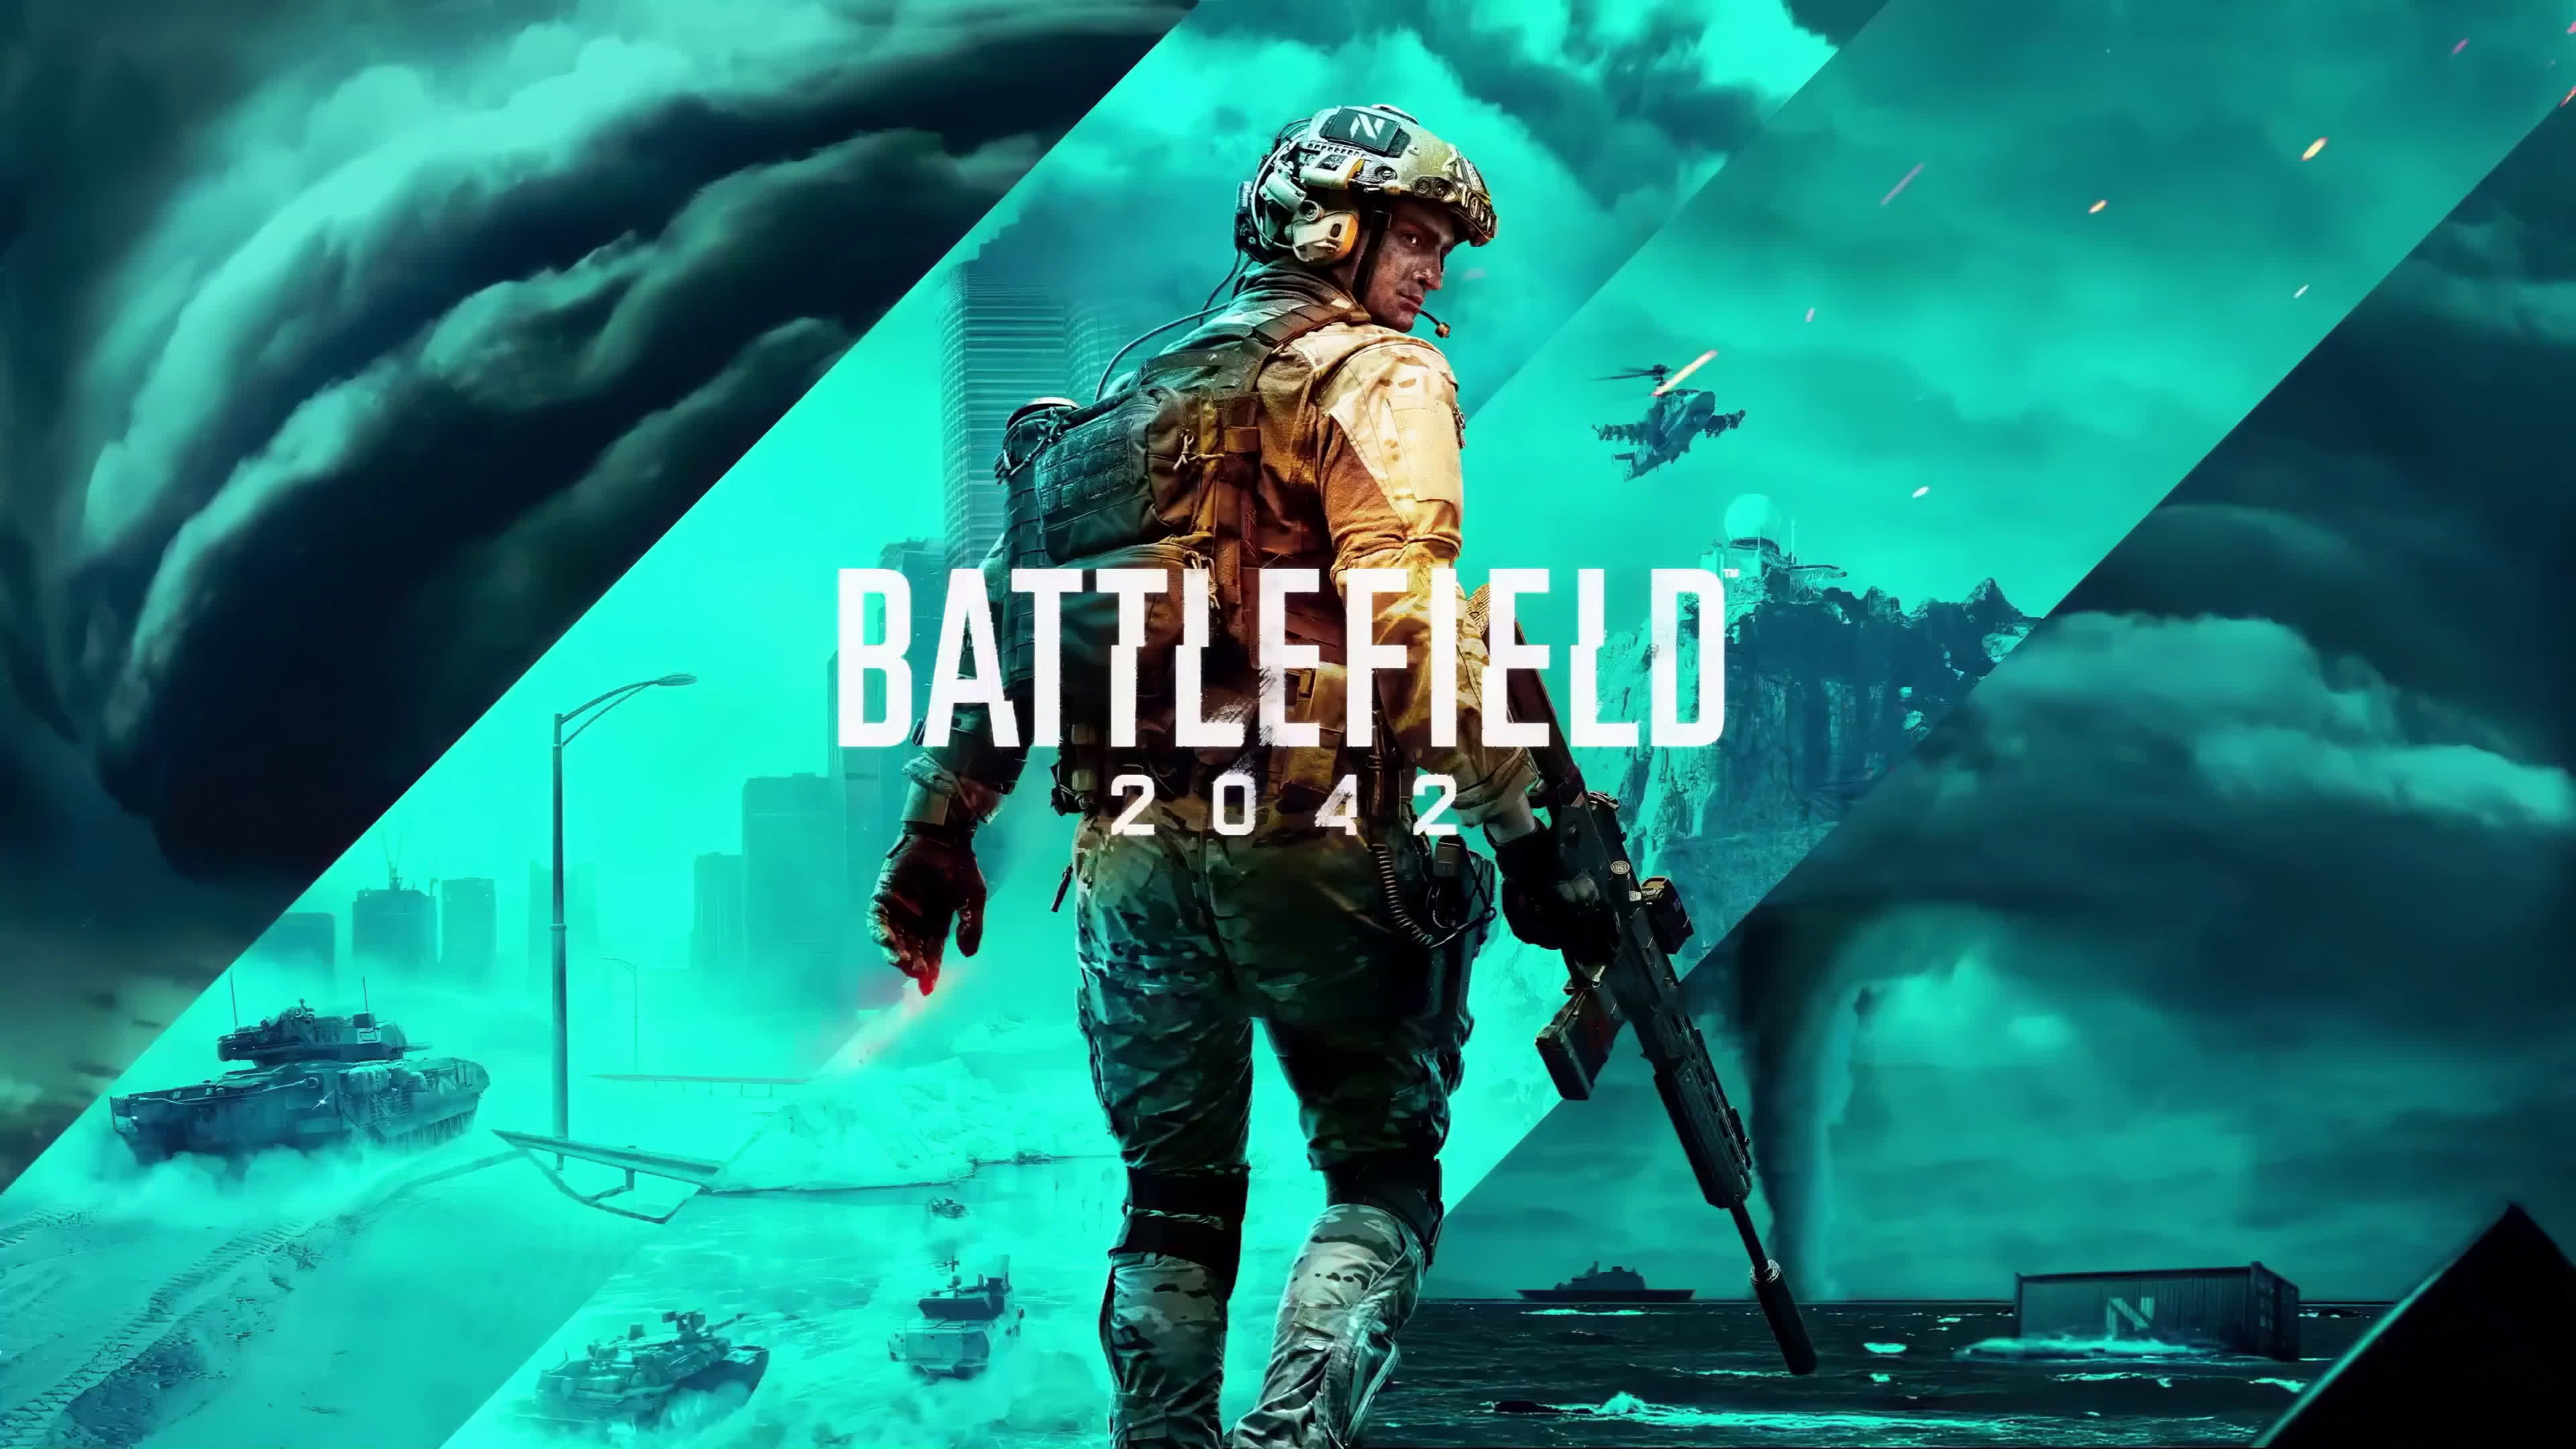 Battlefield 2042 Game 4K Live Wallpaper - Embed